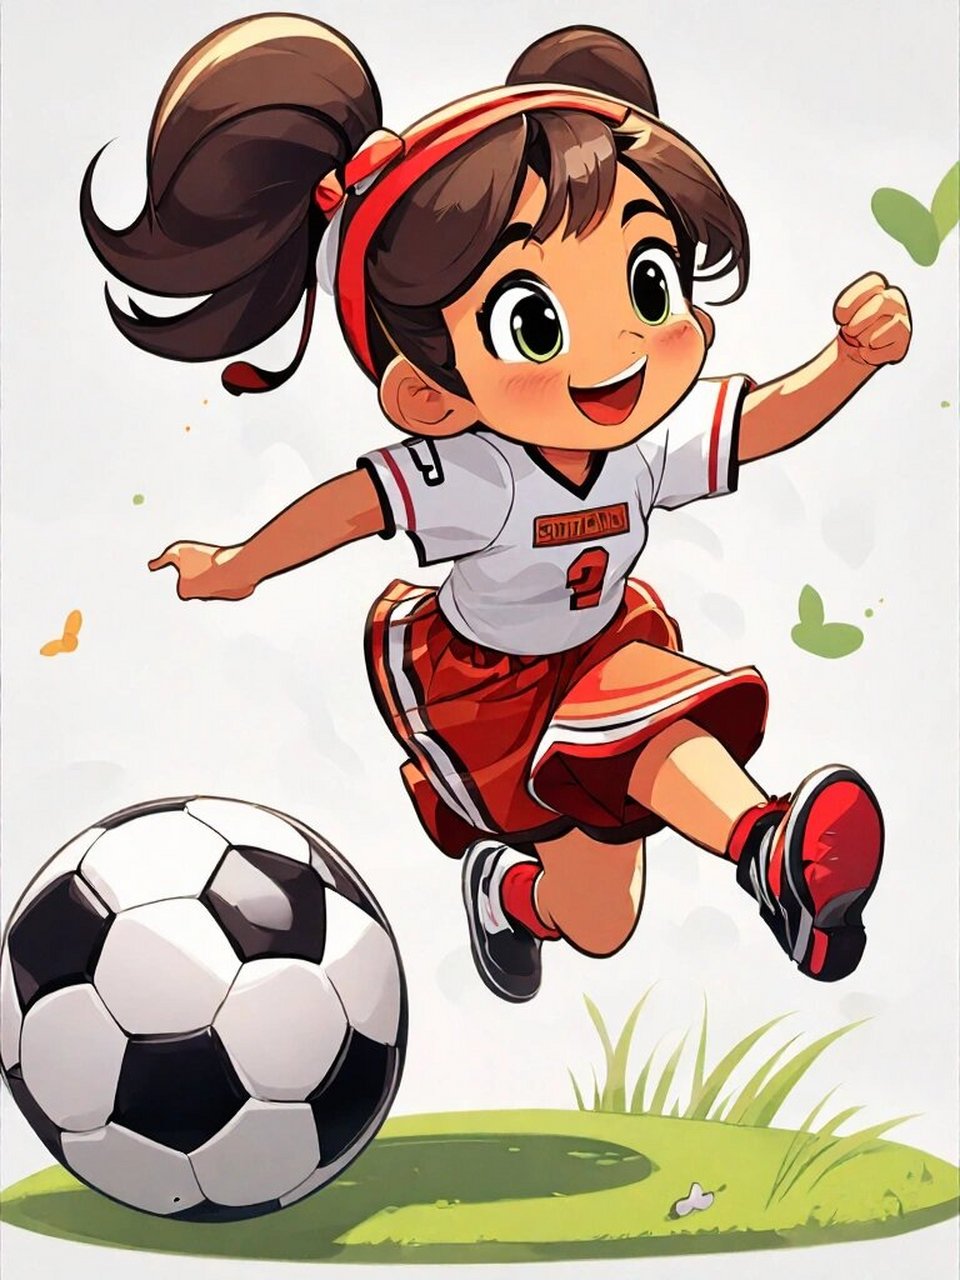 足球漫画简单儿童图片